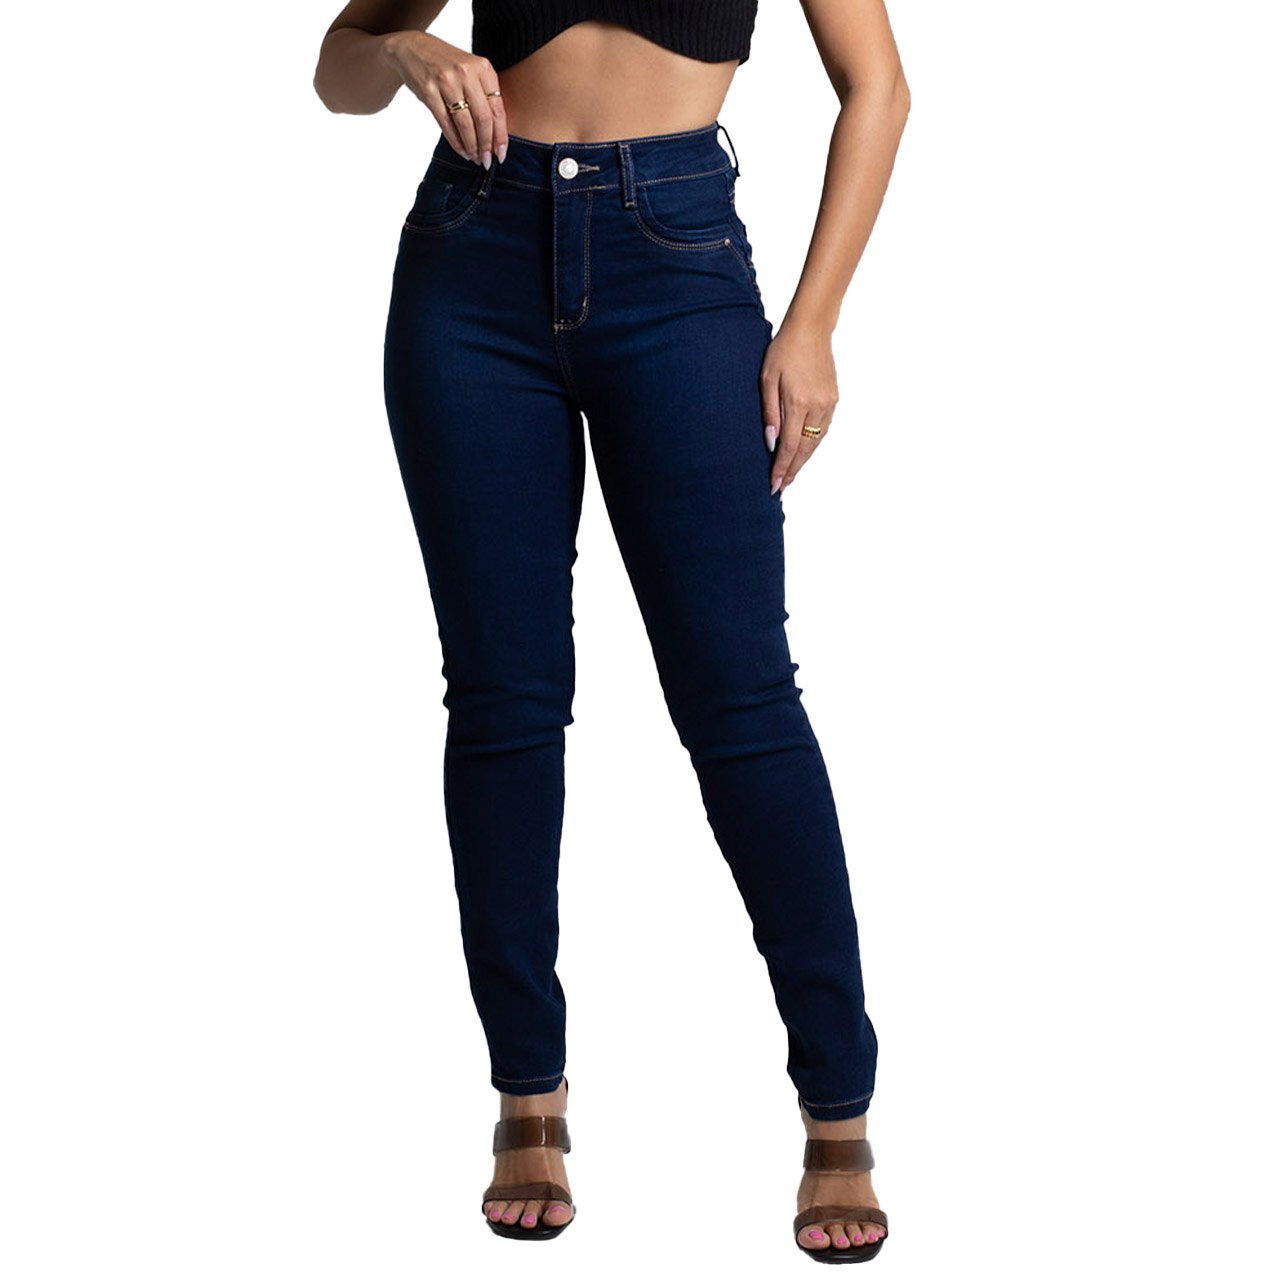 calca-jeans-skinny-sawary-tom-escuro-273164-a